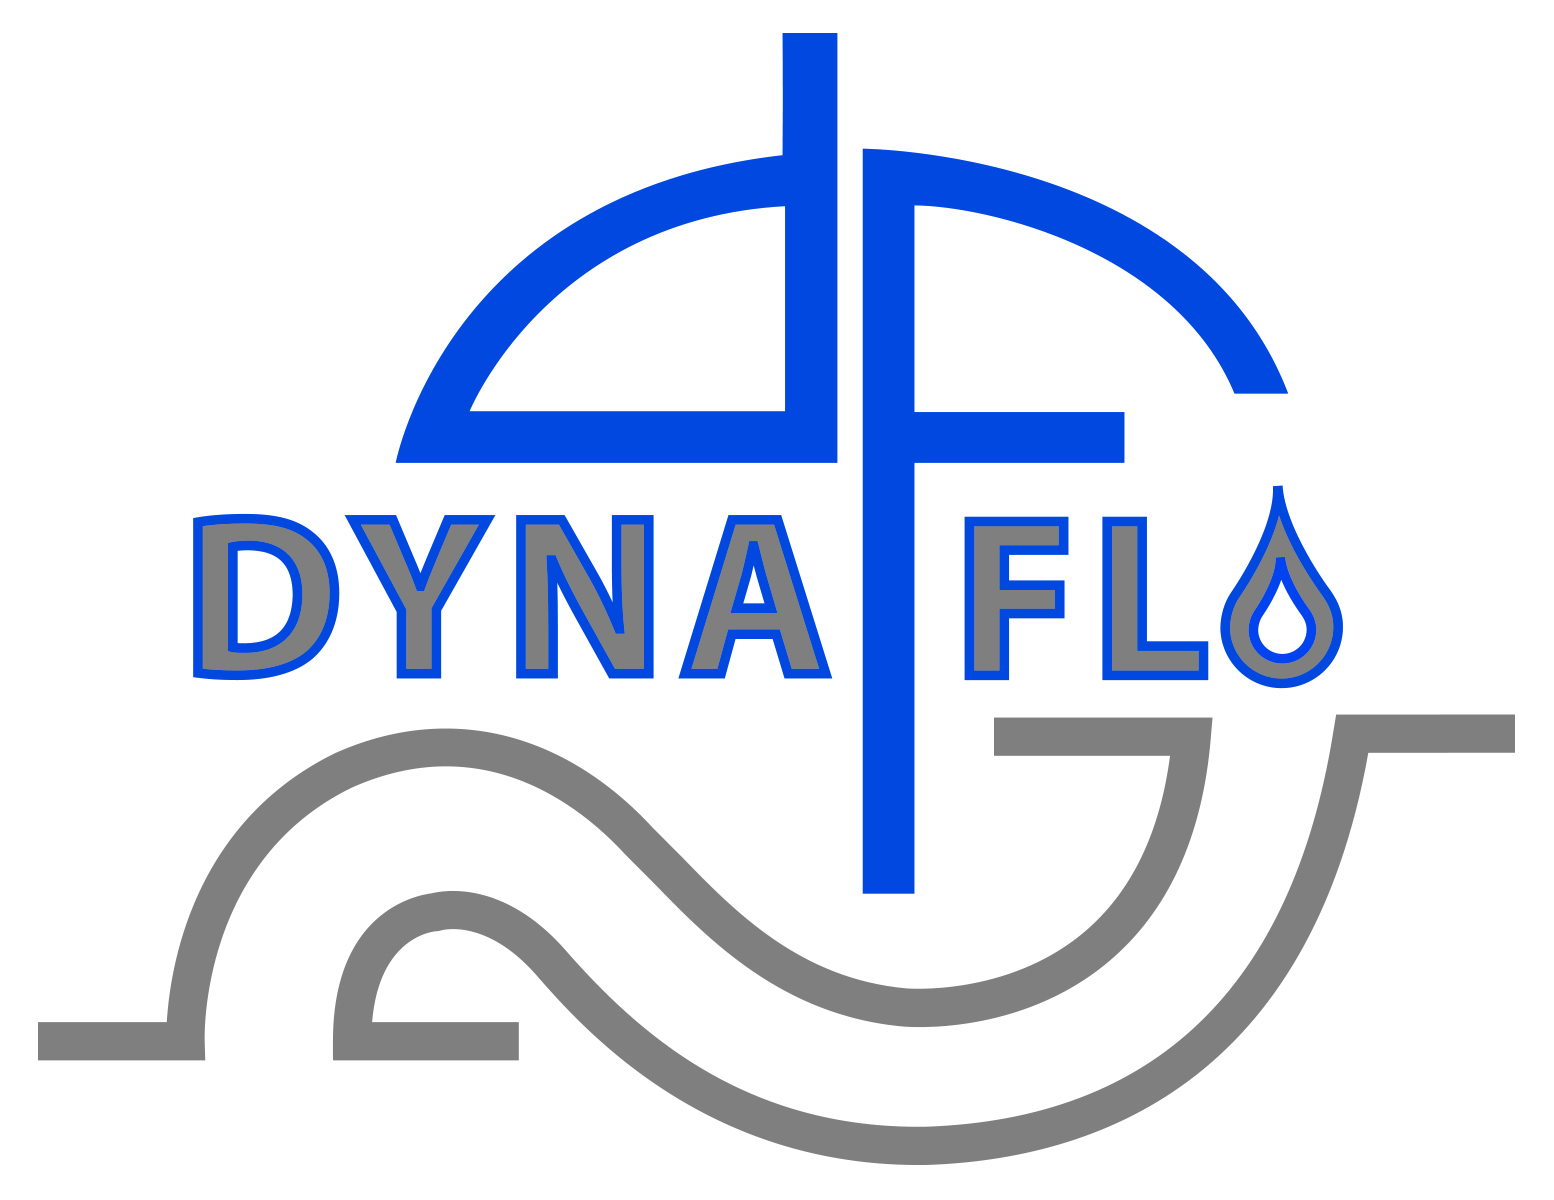 Dyna-Flo